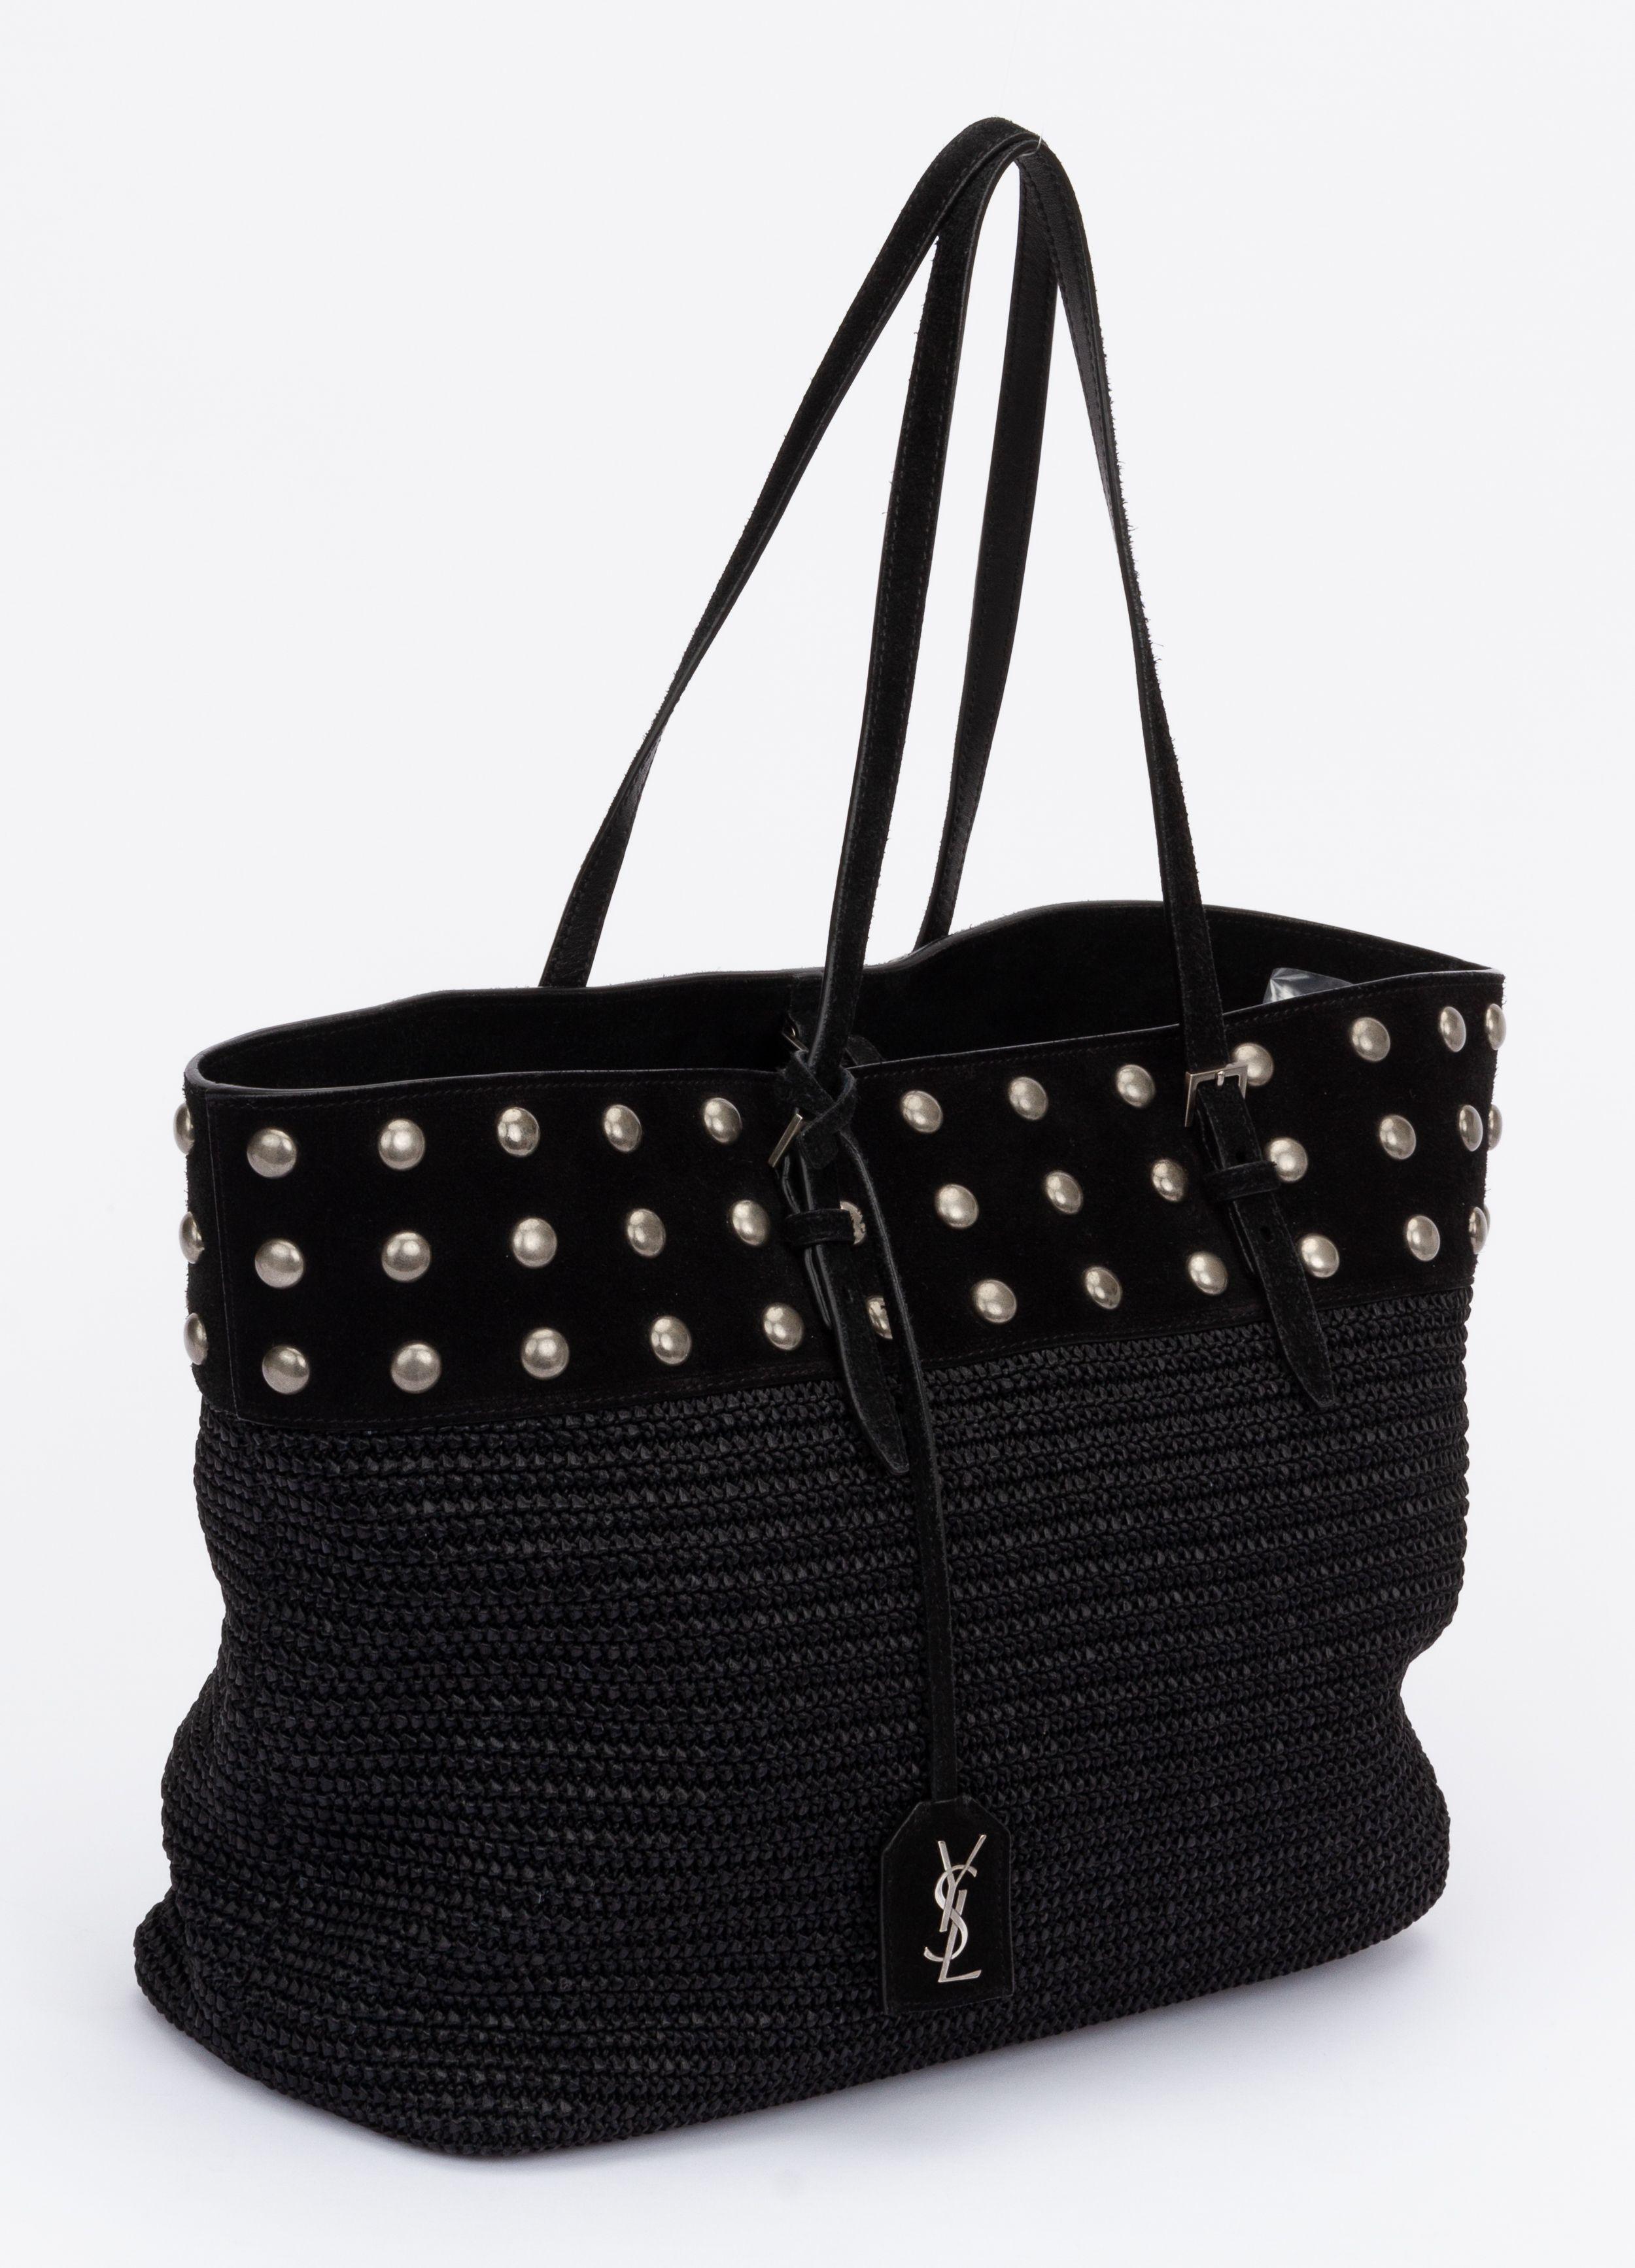 Schwarze Yves Saint Laurent-Tasche aus Weide. Perfektes Stück für den Strand oder eine Alltagstasche. Die untere Hälfte der Tasche ist aus schwarzem Weidengeflecht, während die obere Hälfte mit silbernen Nieten verziert ist. Es hat zwei Griffe